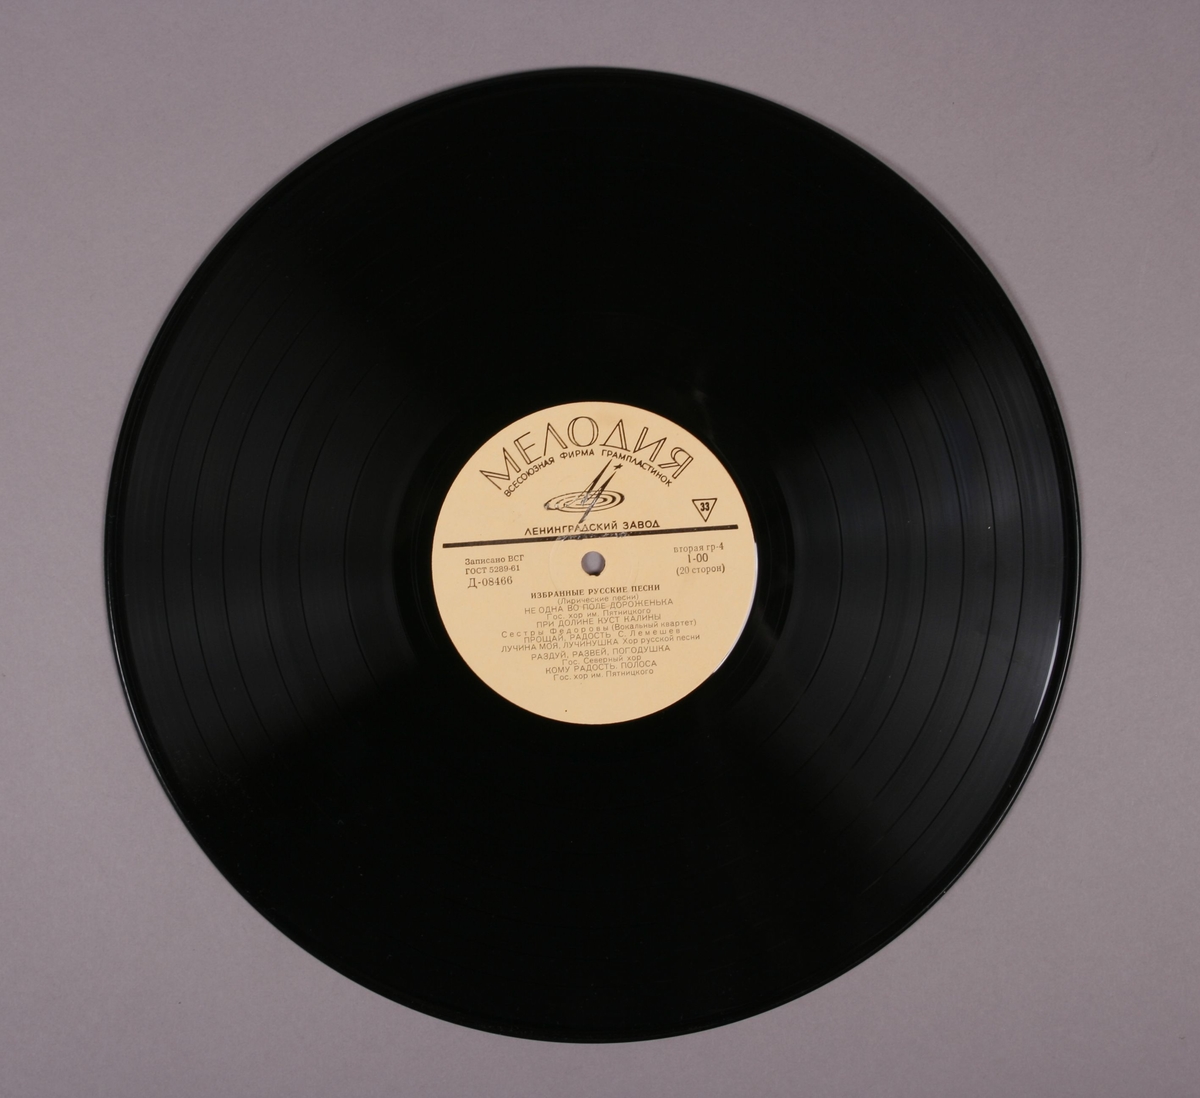 Grammofonplate i svart vinyl og plateomslag i papir. Plateomslaget har påskriftene "A side ok" og "367". Plata ligger i en plastlomme.